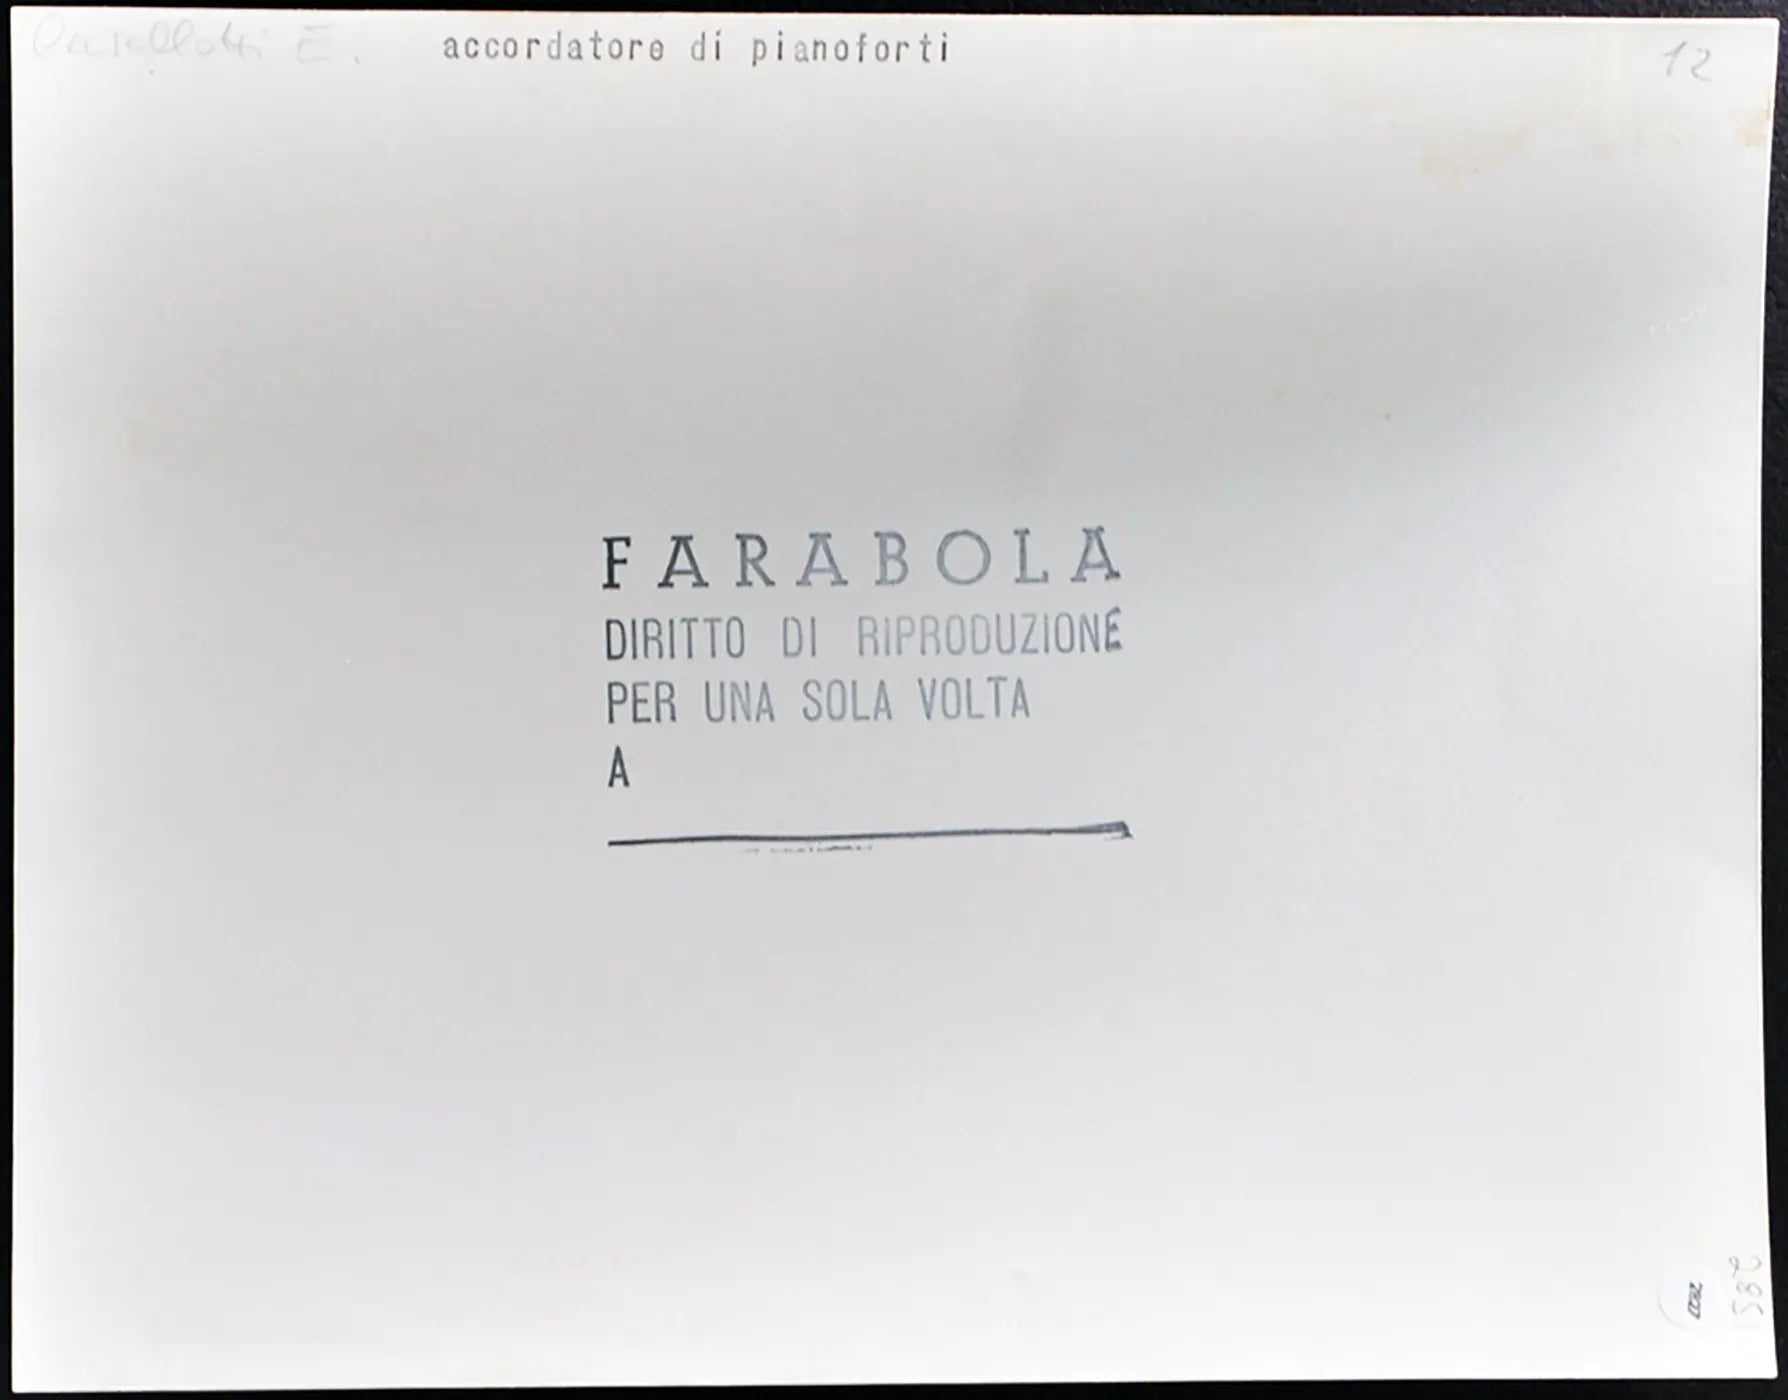 Accordatore di pianoforte anni 60 Ft 2827 - Stampa 21x27 cm - Farabola Stampa ai sali d'argento